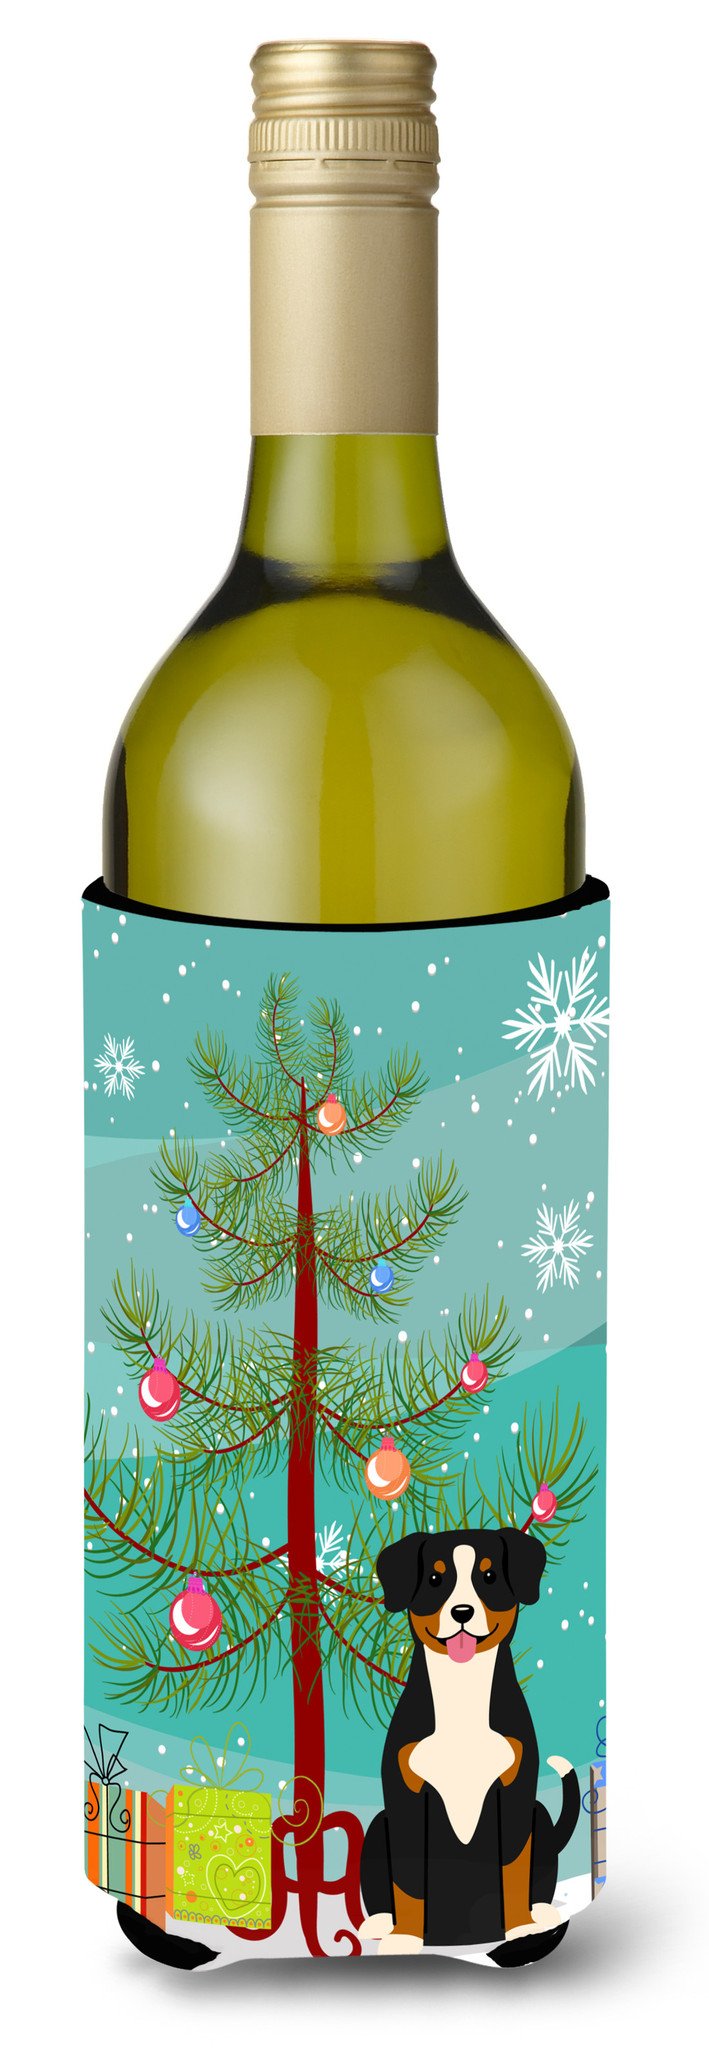 Merry Christmas Tree Entlebucher Wine Bottle Beverge Insulator Hugger BB4163LITERK by Caroline's Treasures